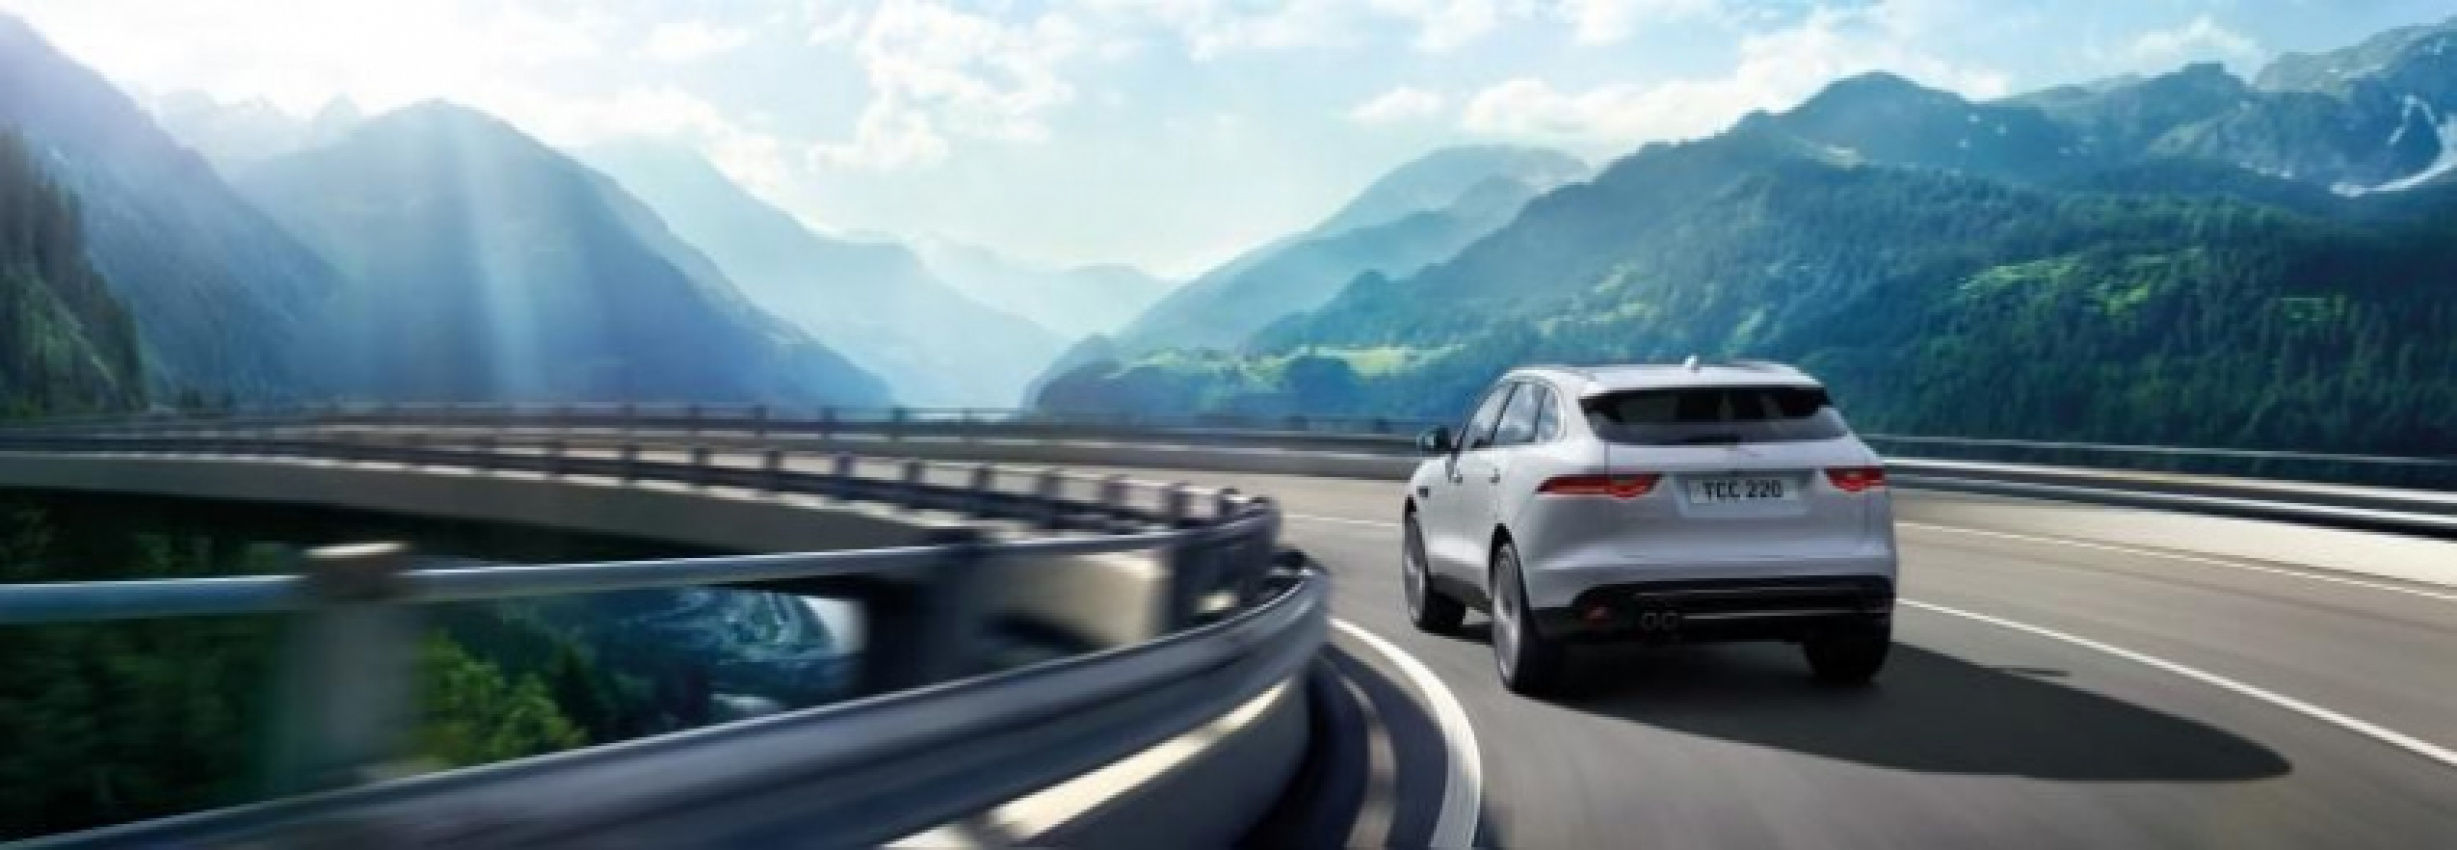 autos, cars, jaguar, 2015 jaguar, auto news, crossover, cx-17 concept, f-pace, f-type, frankfurt motor show, jaguar land rover, jlr, suv, frankfurt 2015: jaguar's f-pace suv makes its debut